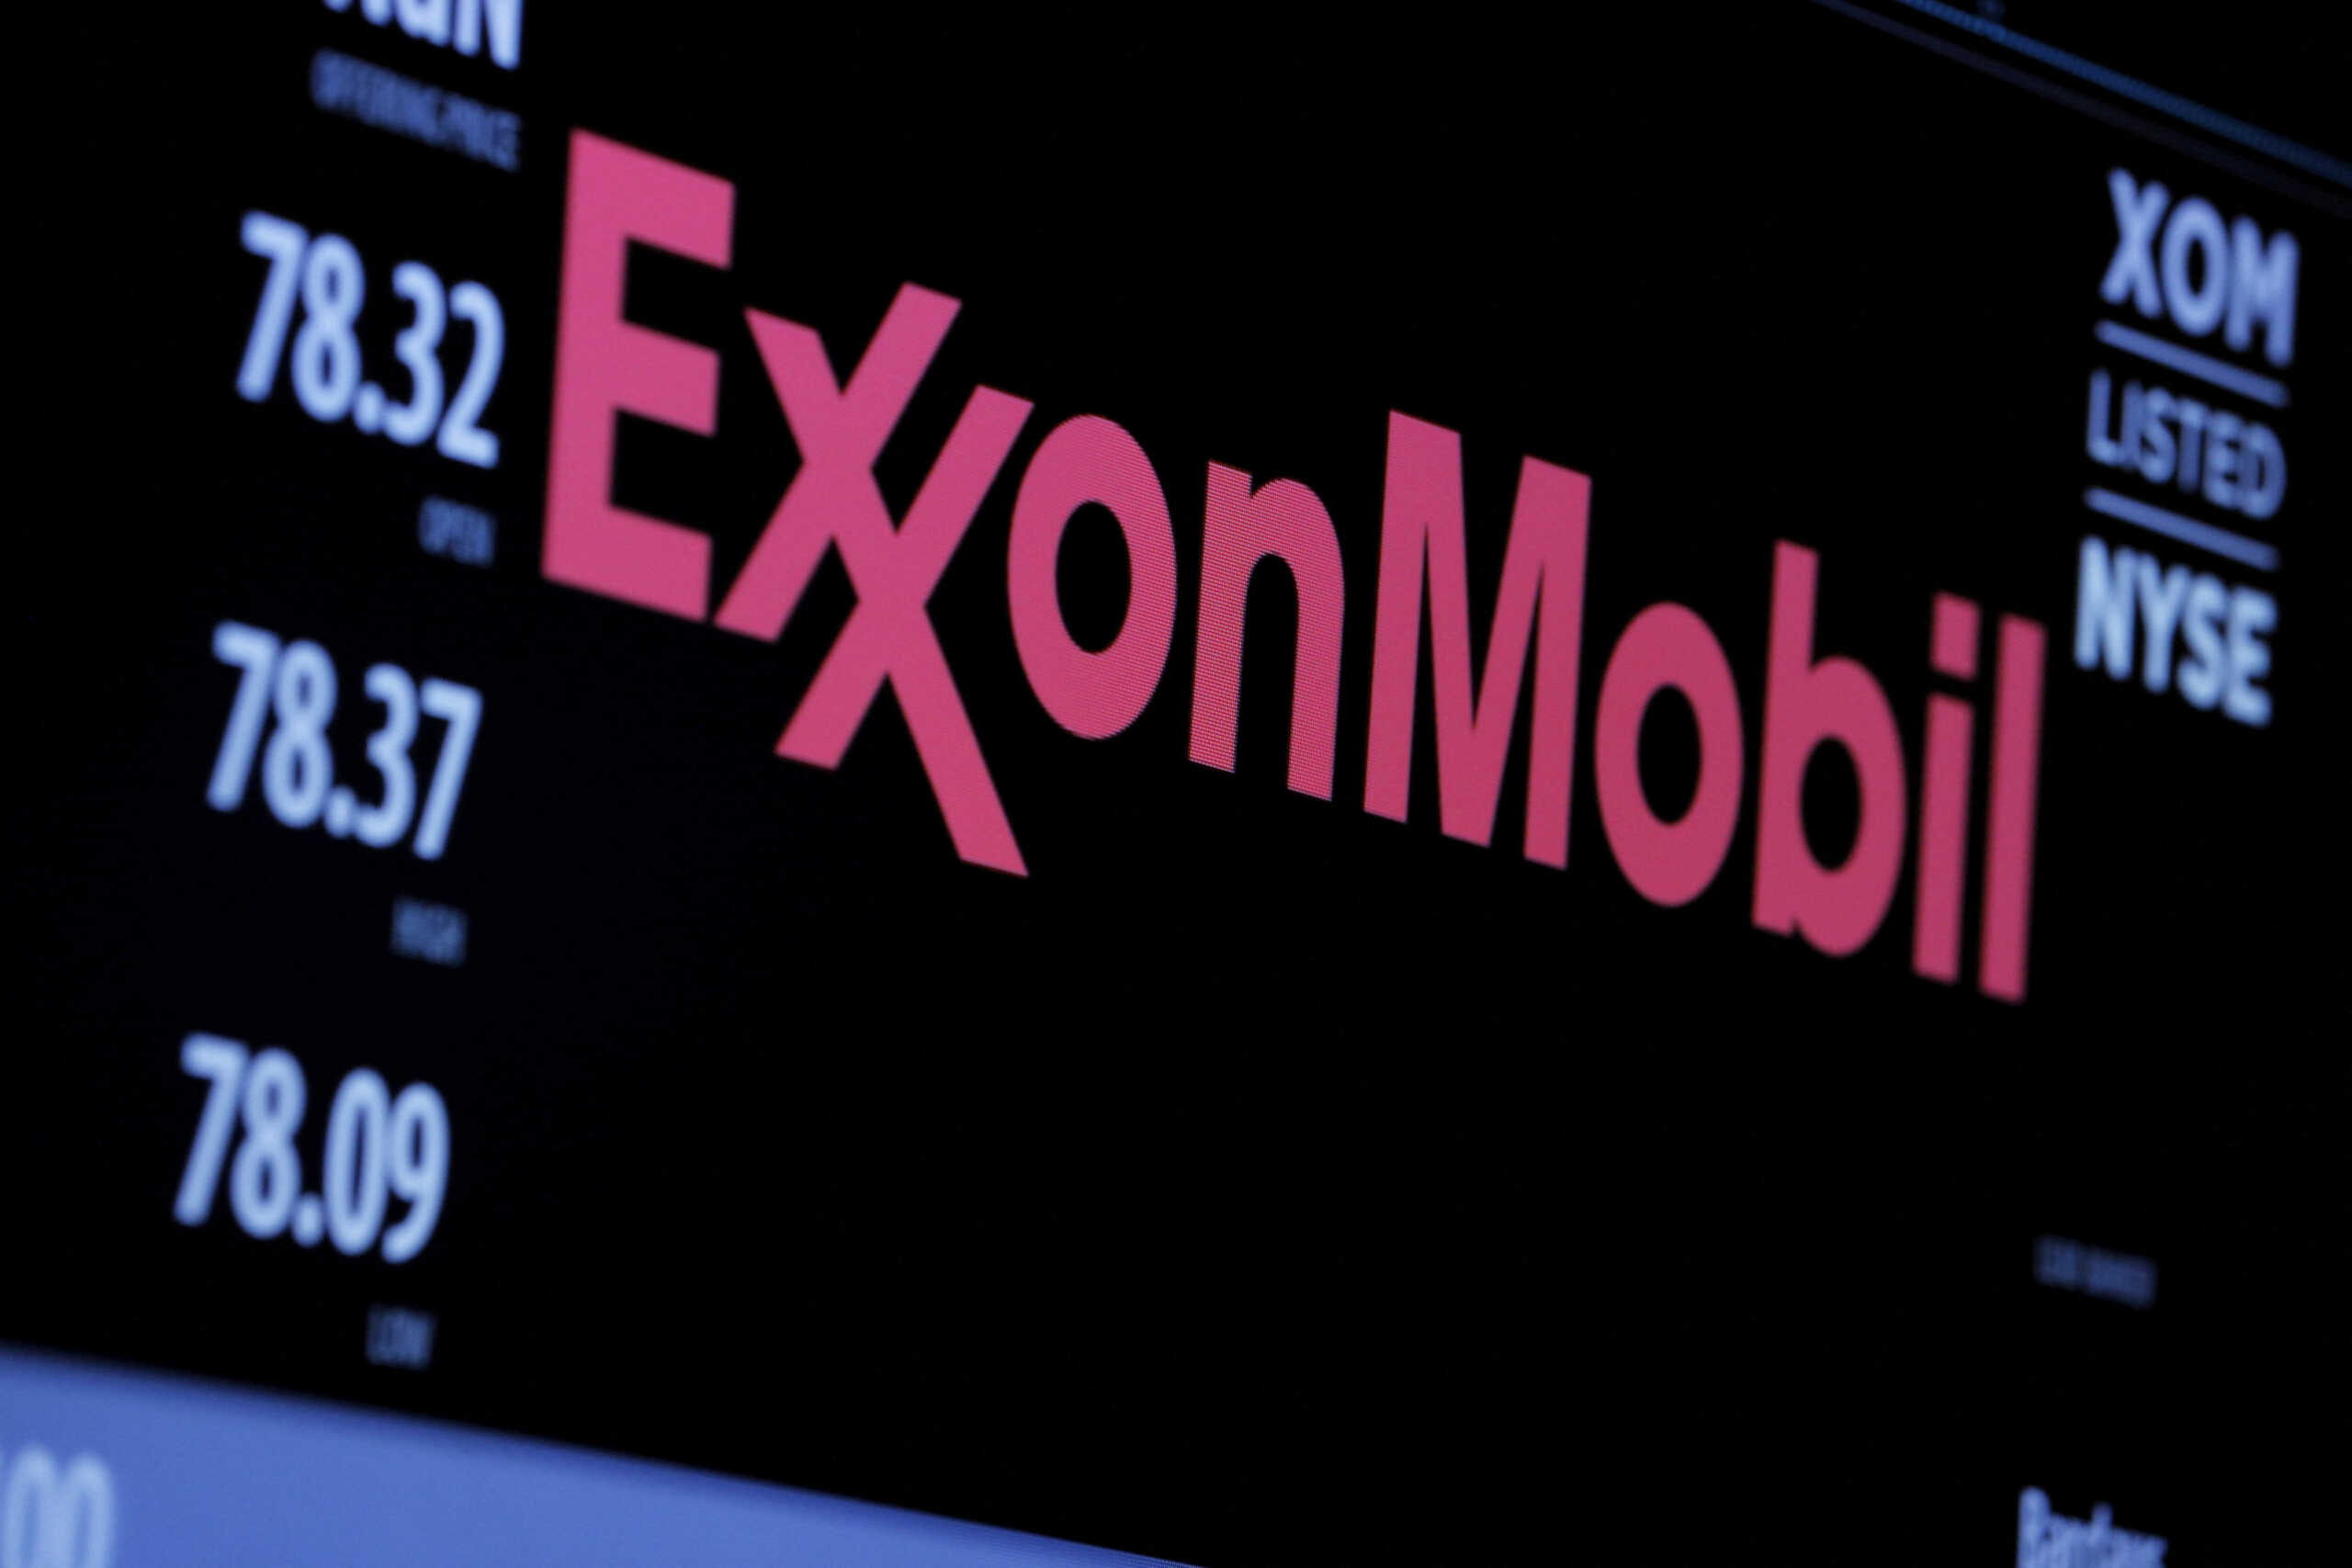 ΗΠΑ: Υποχωρούν οι μετοχές Exxon Mobil και Chevron καθώς τα κέρδη του πρώτου τριμήνου δεν ανταποκρίνονται στις εκτιμήσεις